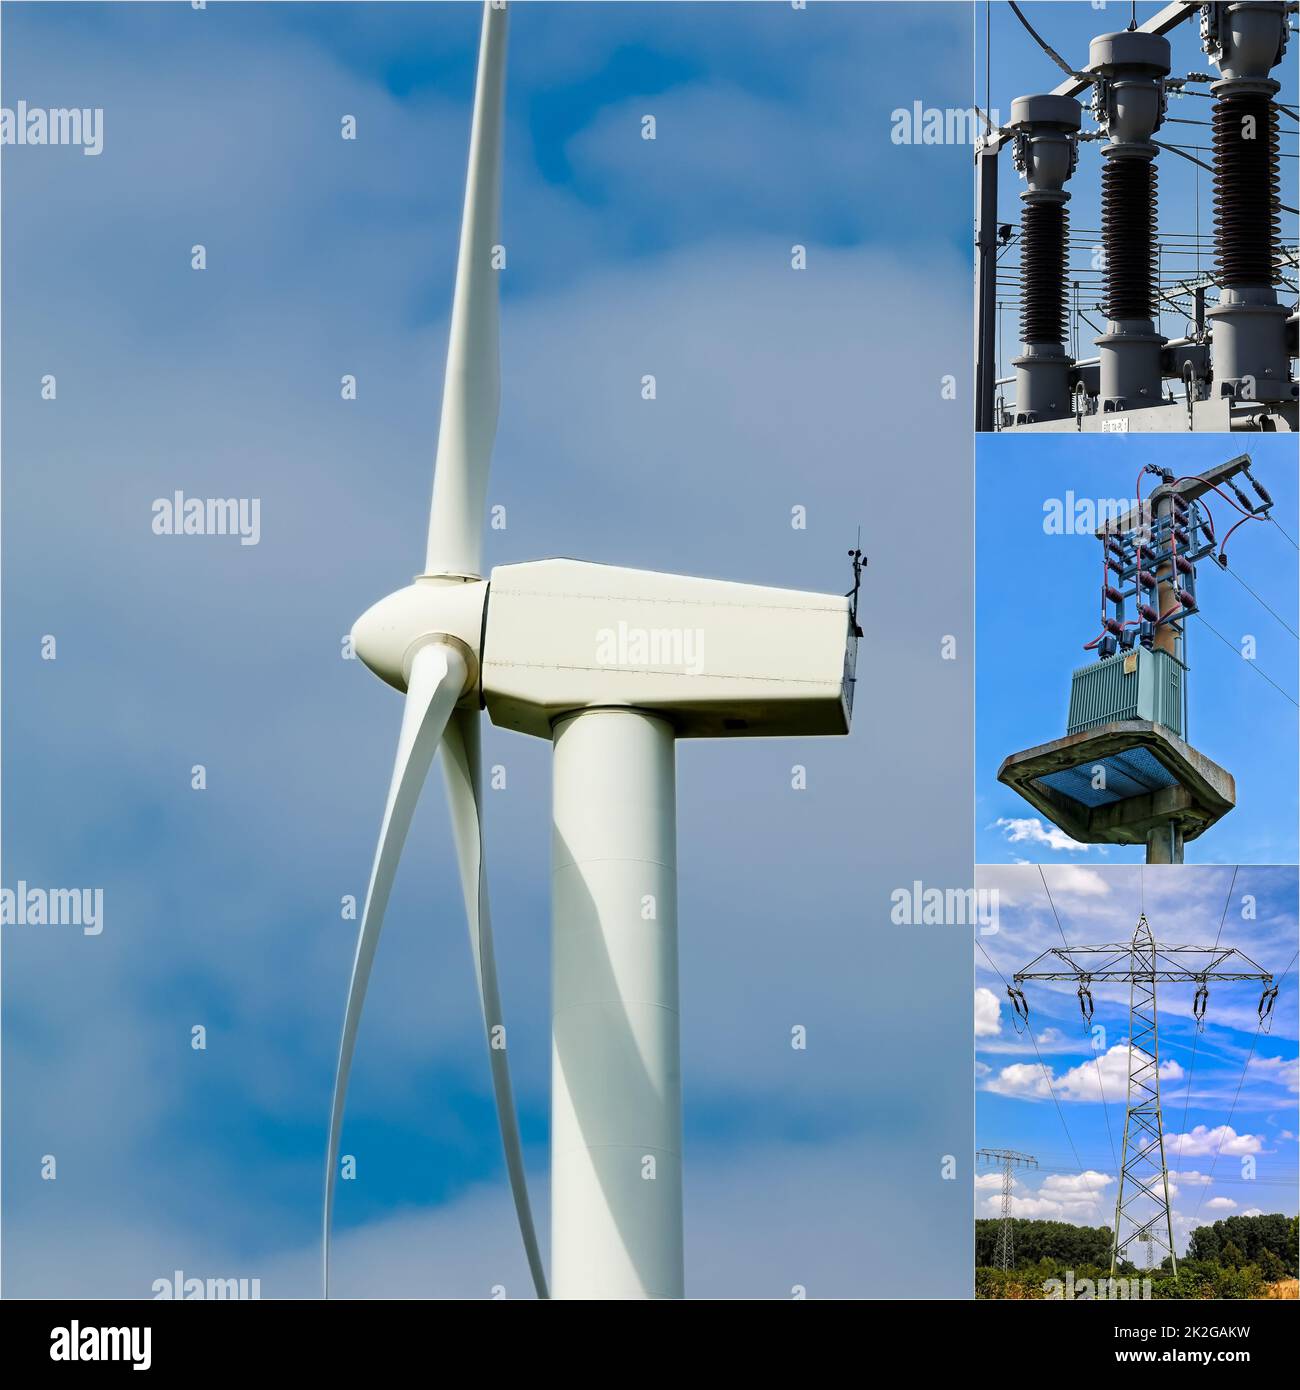 Turbine eoliche, turbine eoliche nella fattoria eolica, generazione di energia e fornitura di energia attraverso le energie rinnovabili, energia eolica Foto Stock